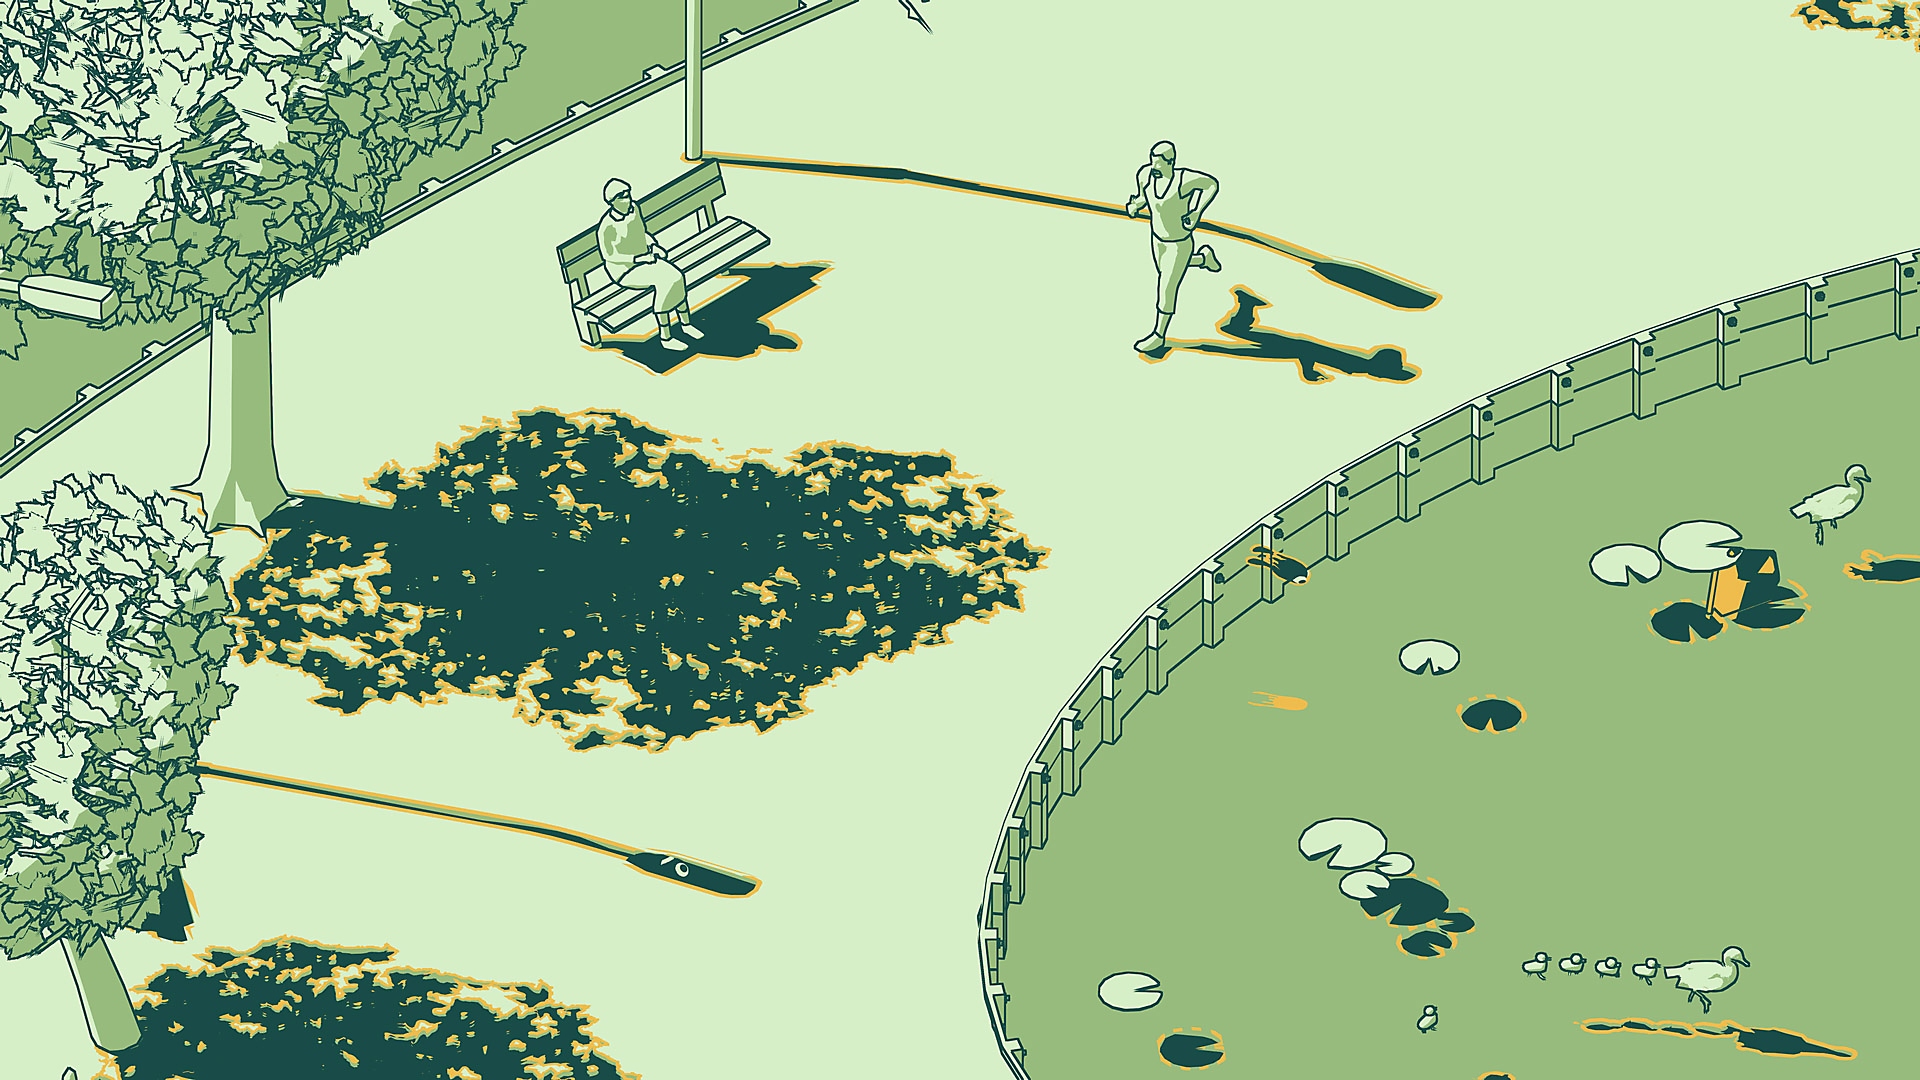 SCHiM – skärmbild som visar en park med en löpare och någon som sitter på en parkbänk